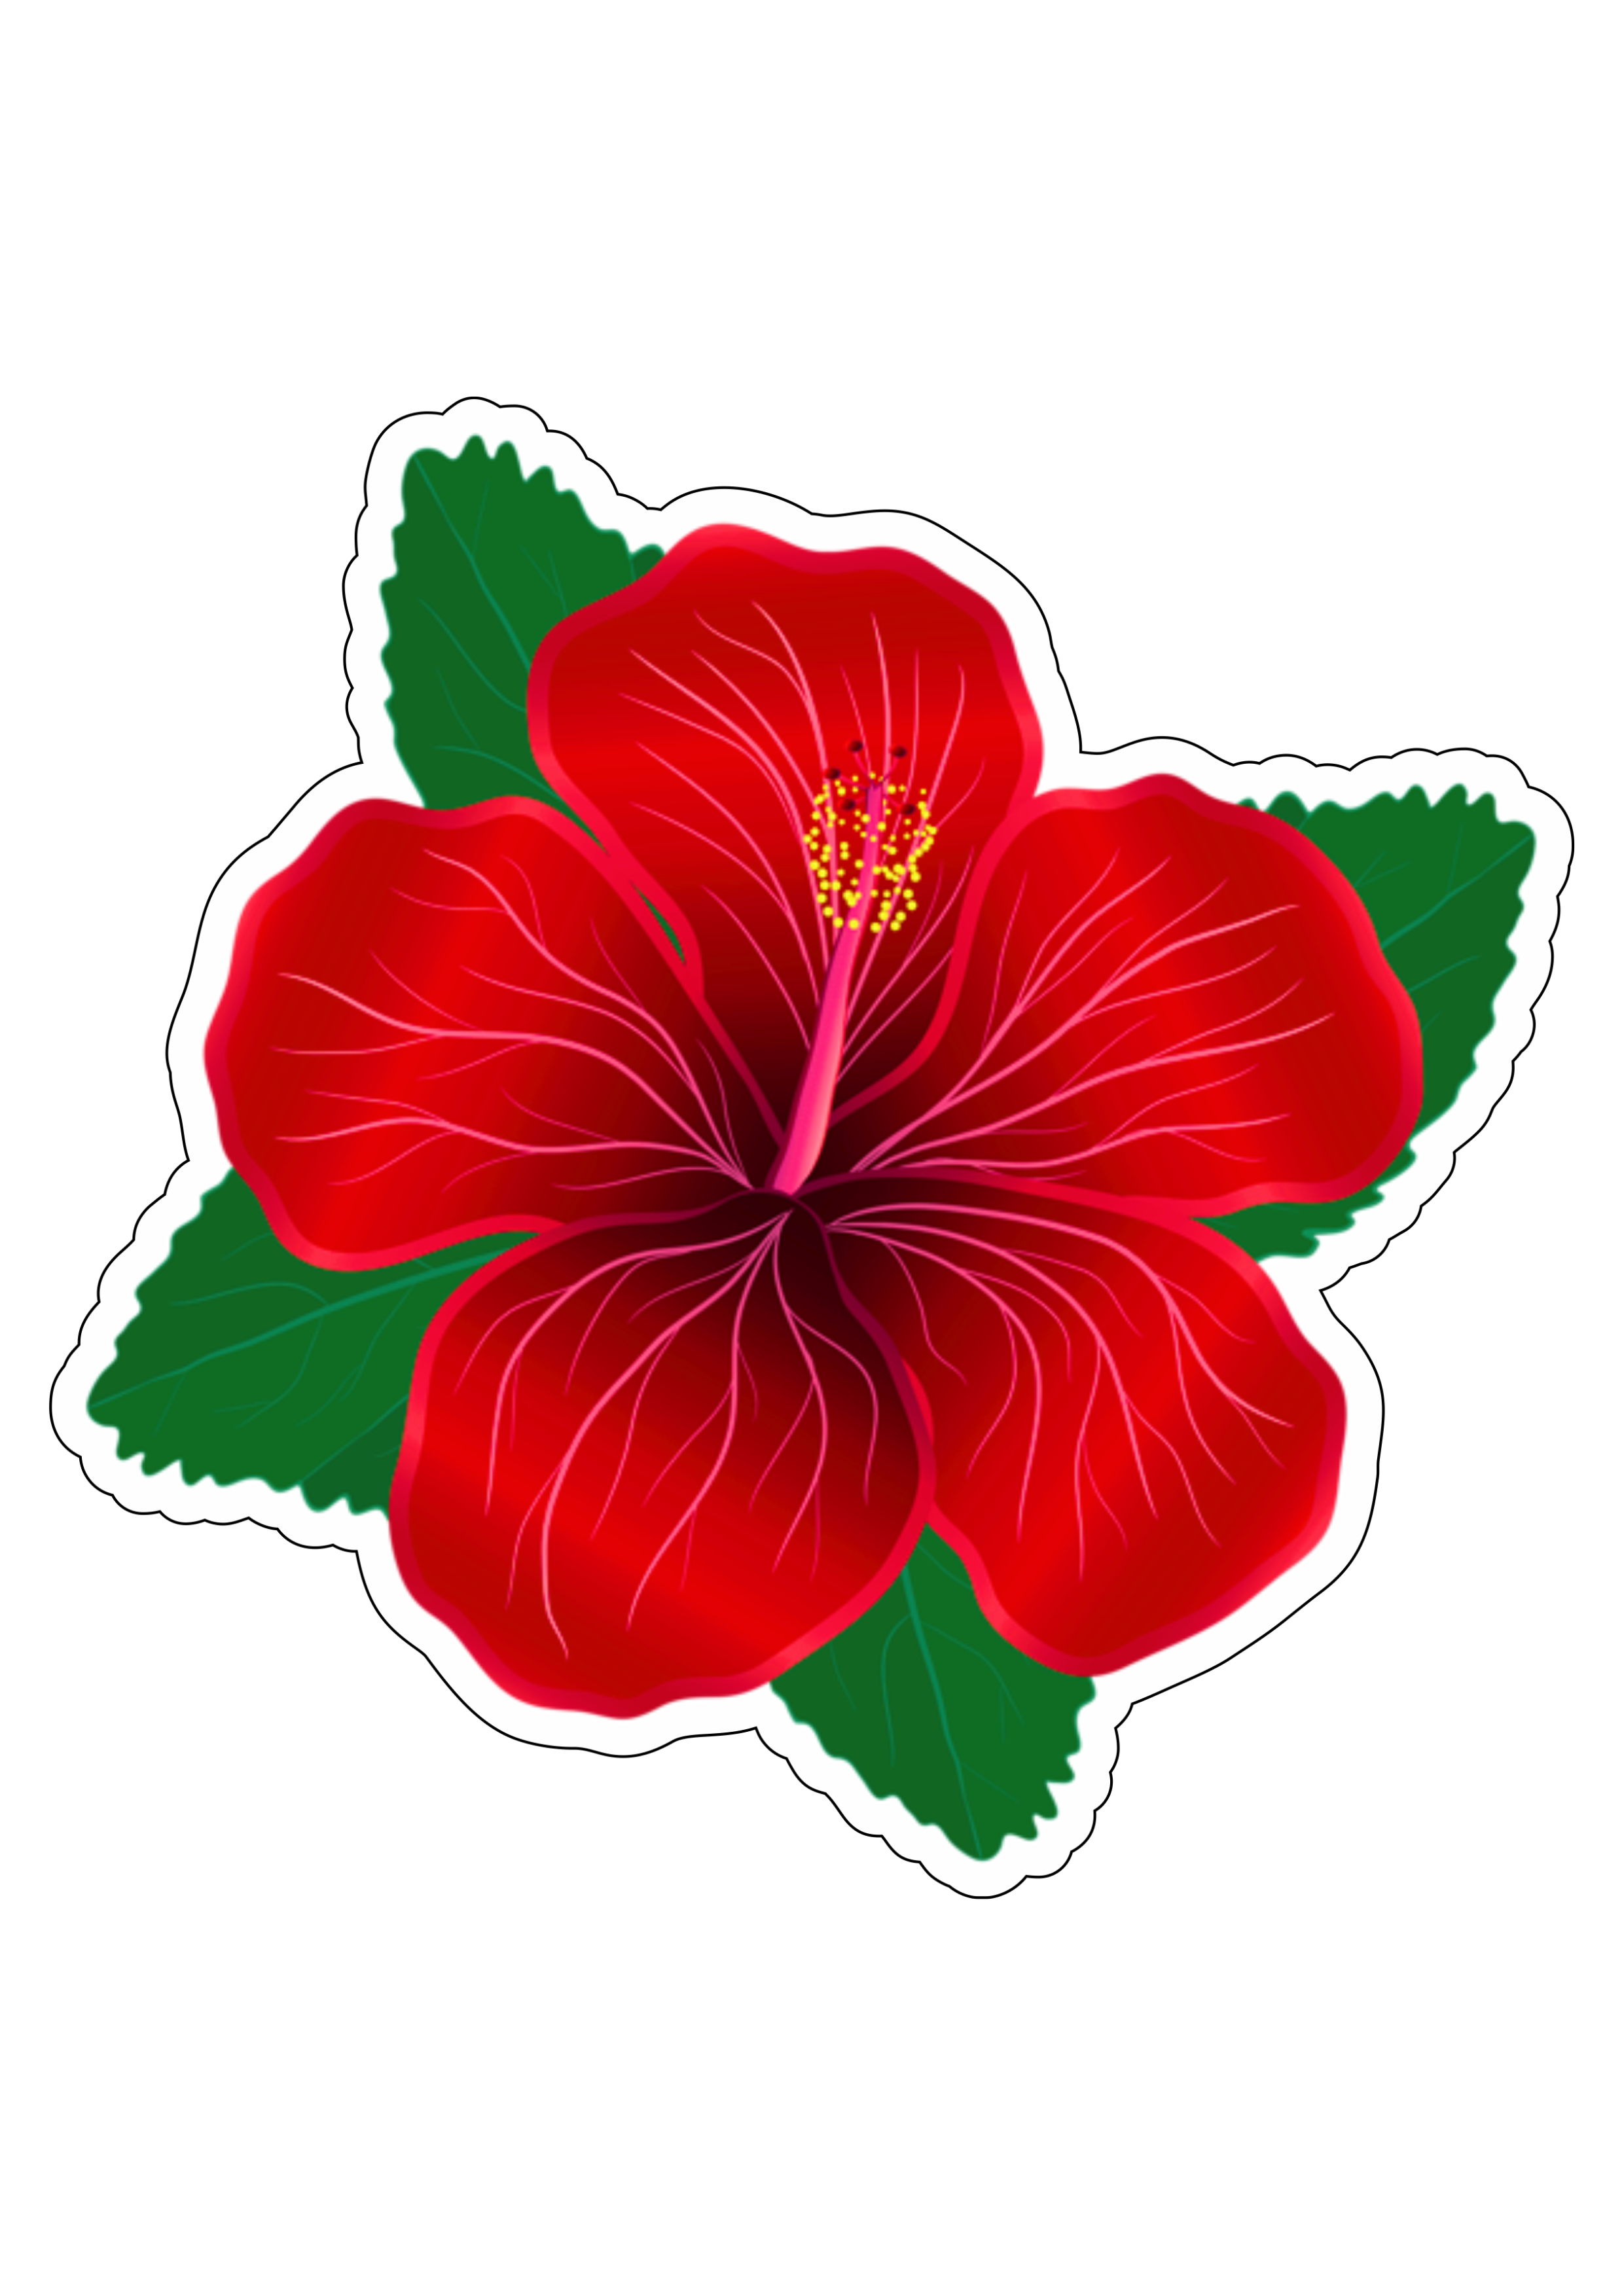 Flor vermelha tropical colorida desenho moana imagem sem fundo com contorno png